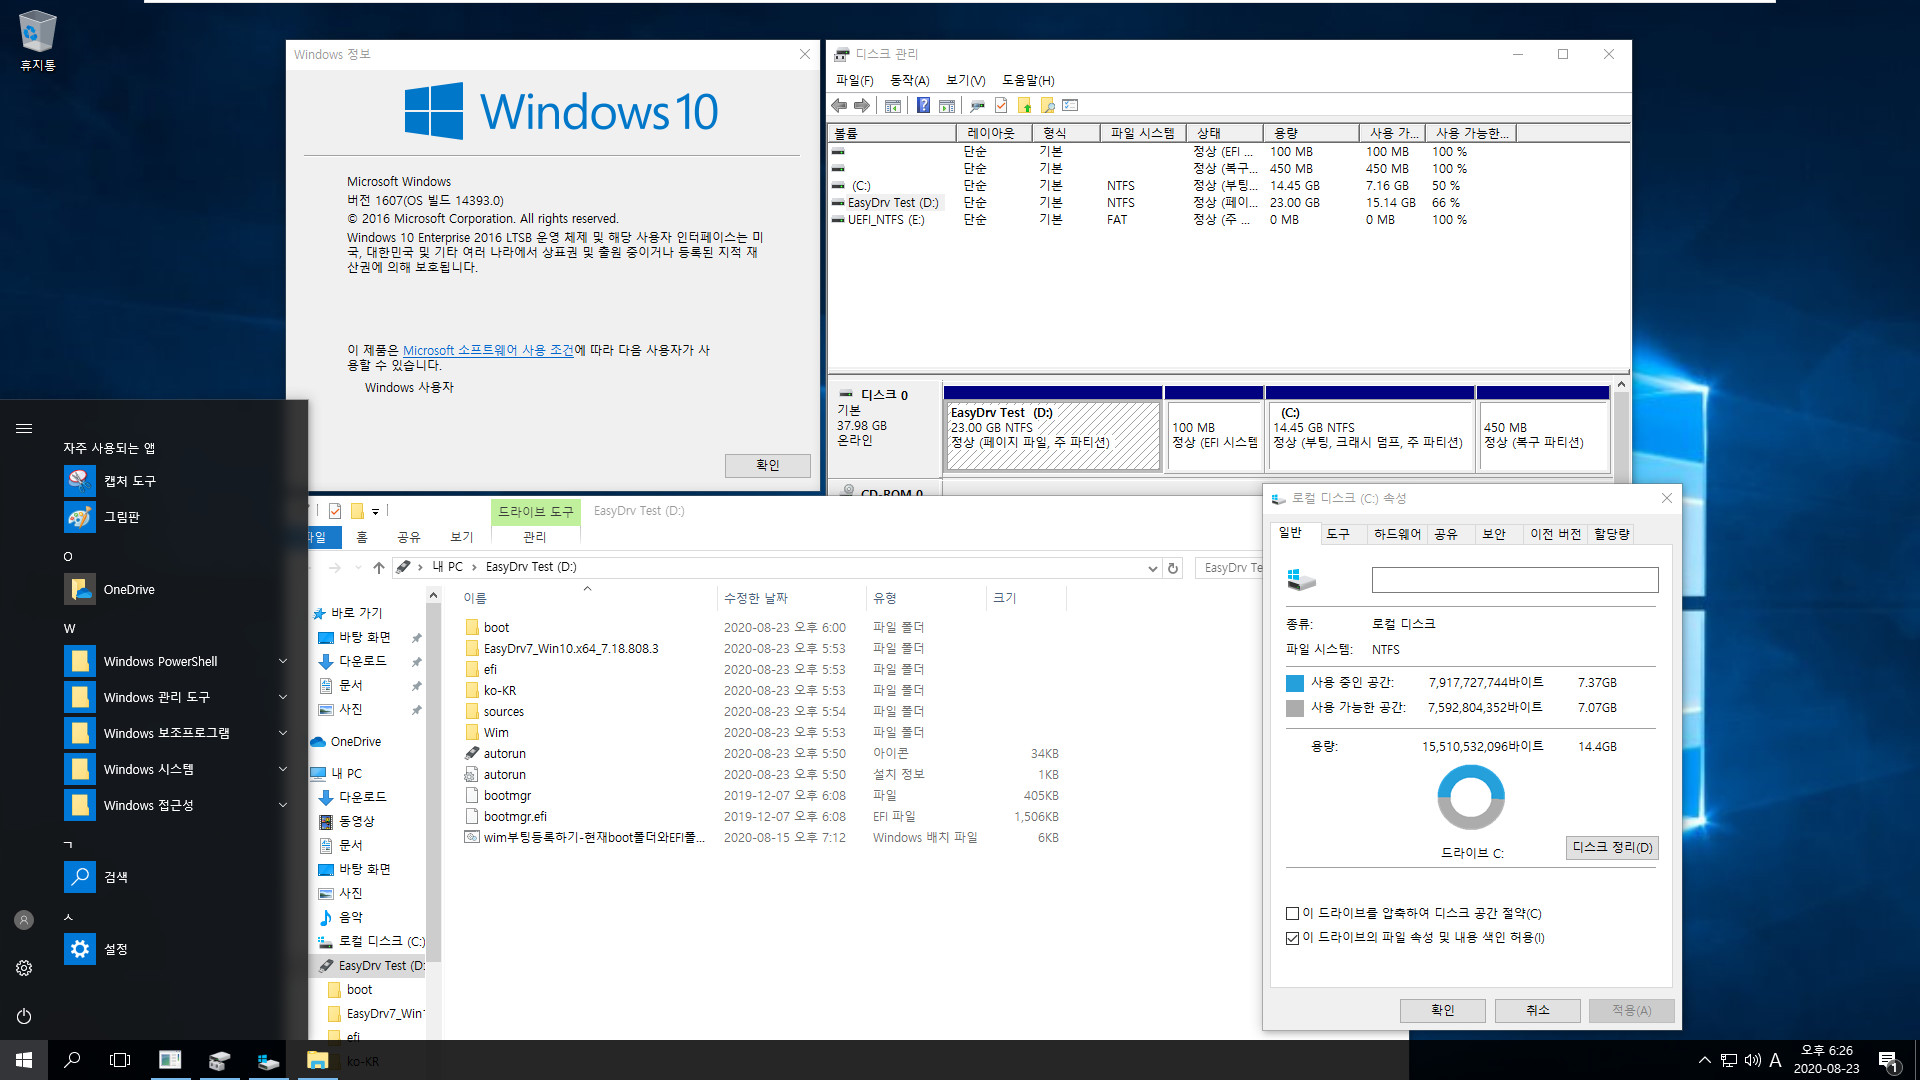 Windows 10 v2004 x64 PE와 Windows 설치 통합 뼈대 2탄 - sources 1개에 x64 x86 겸용뼈대.iso으로 EasyDrv 관리자계정 무인설치 테스트 - vmware에서 윈도우 10 64비트 UEFI 설치 2020-08-23_182602.jpg